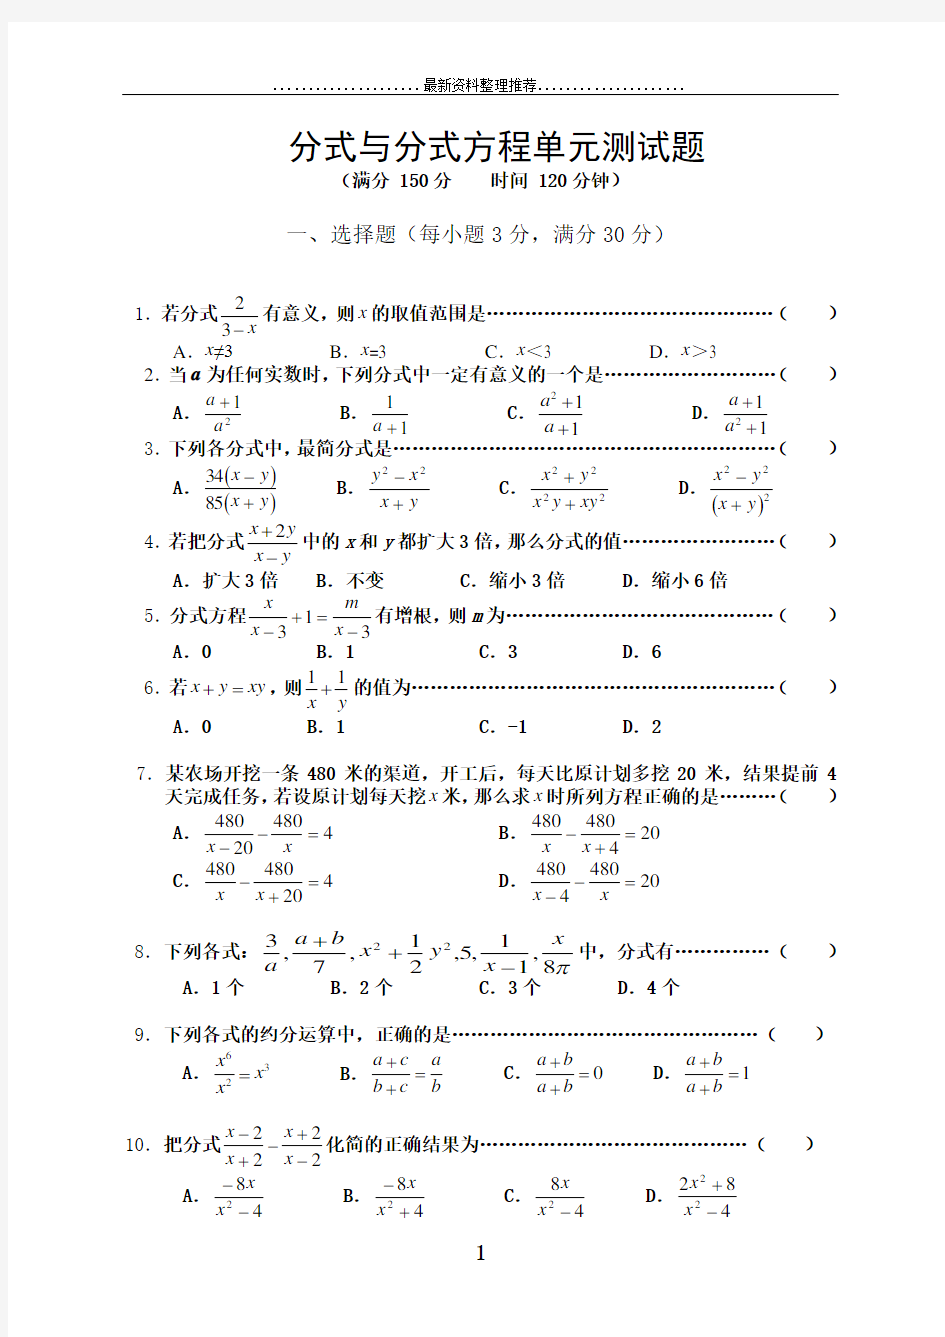 分式与分式方程单元测试题